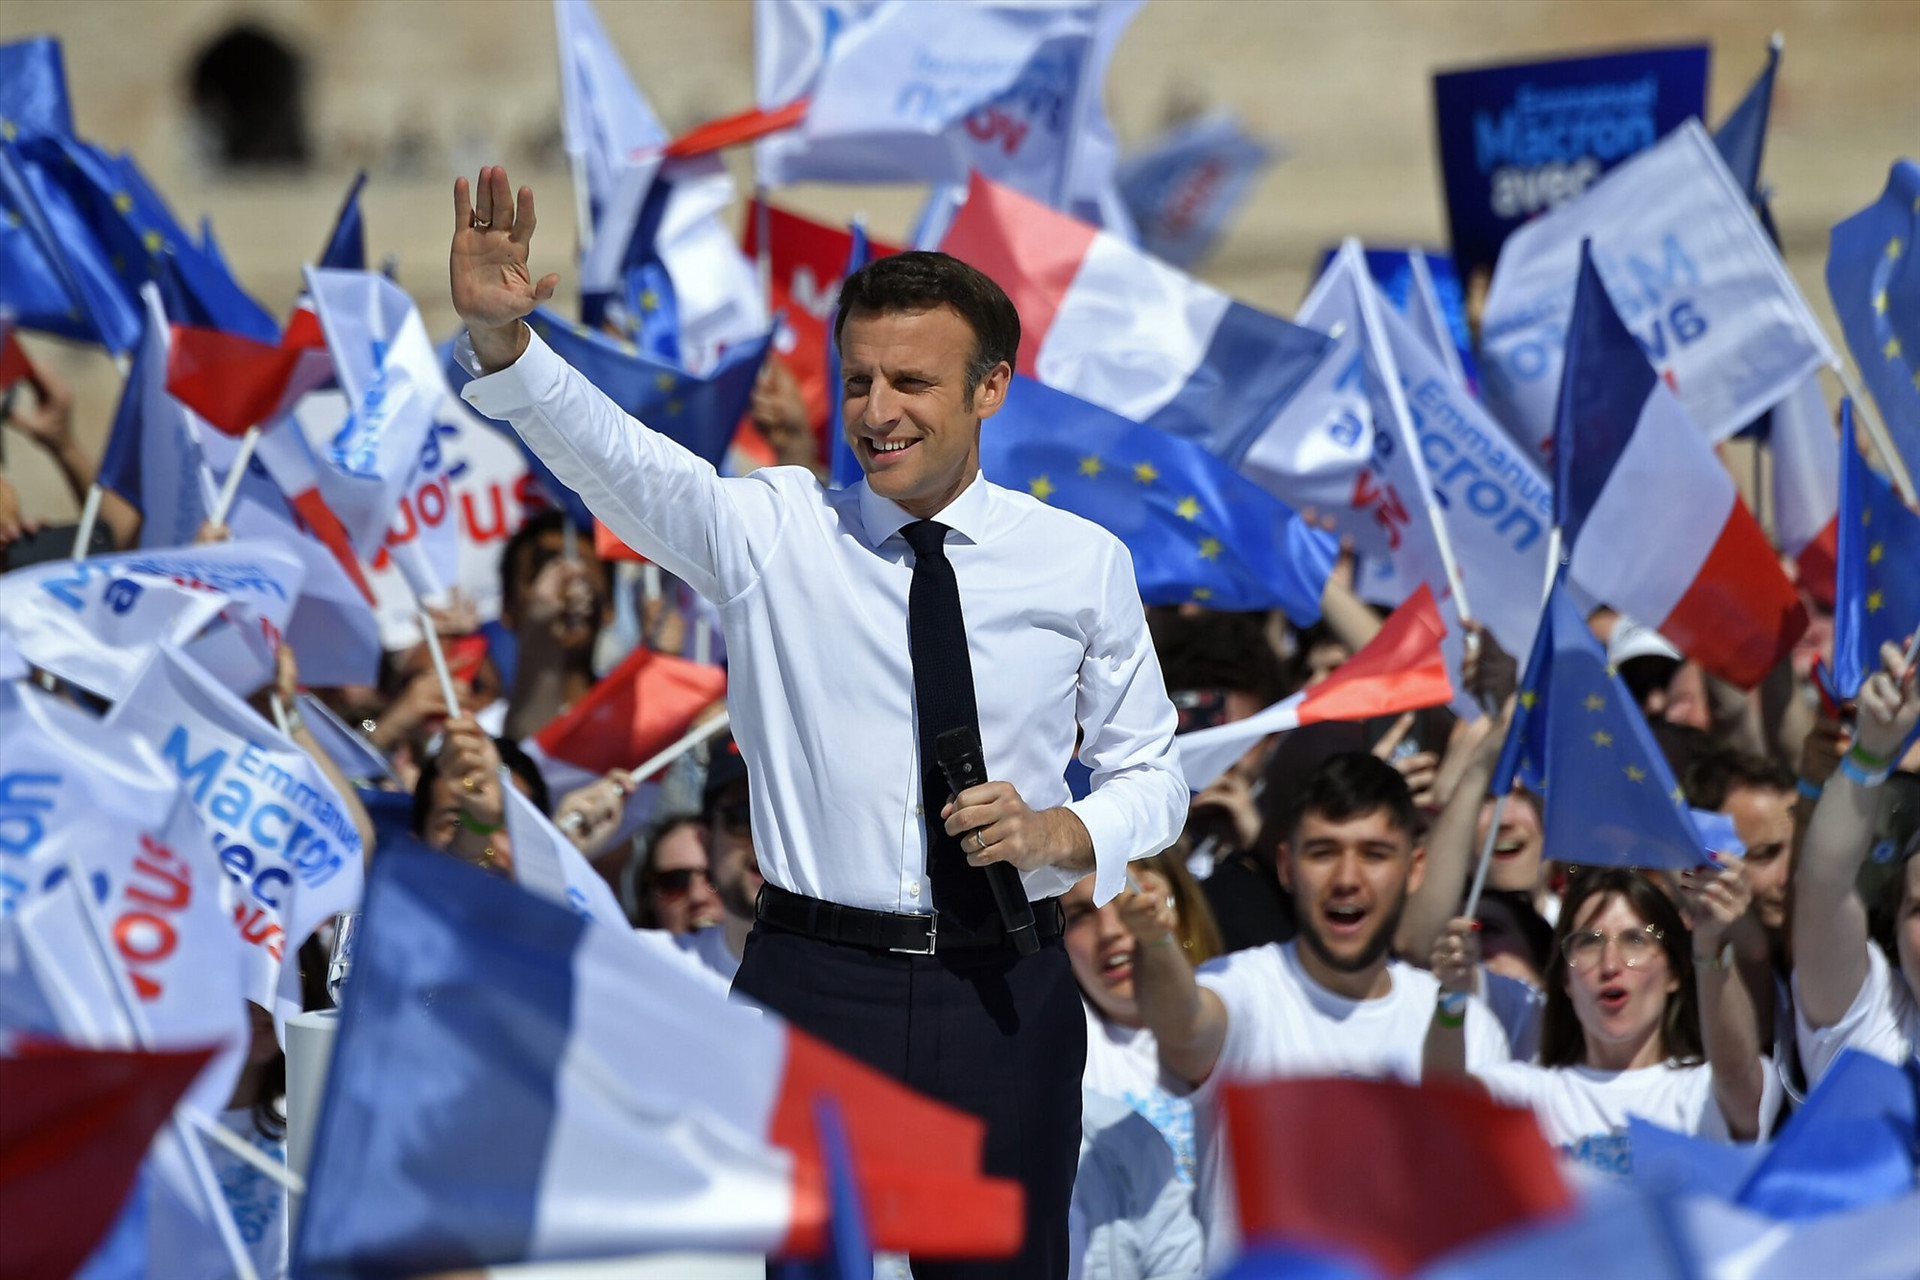 Tổng thống Emmanuel Macron phát biểu trước những người ủng hộ tại Paris.